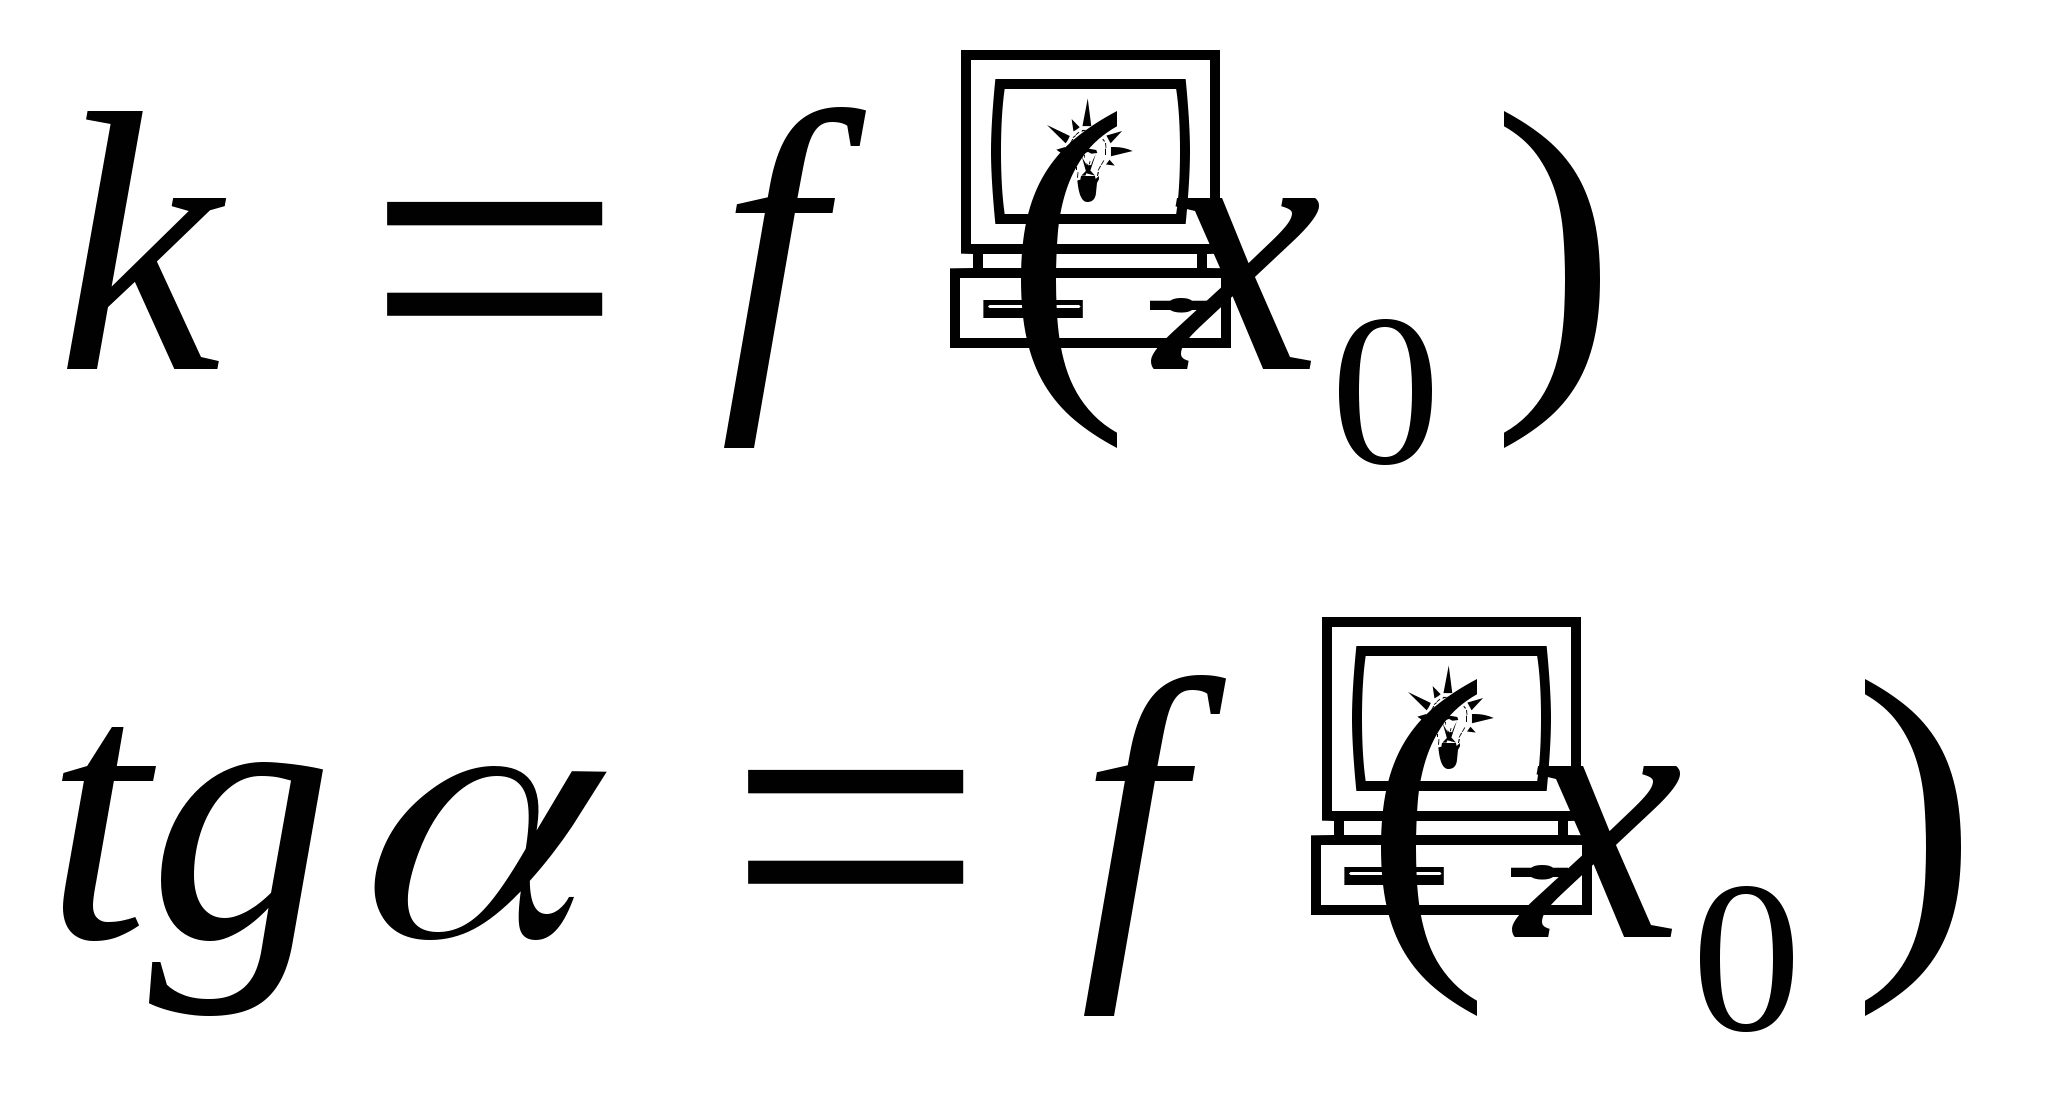 Конспект урока по математике Производная функции (11 класс)